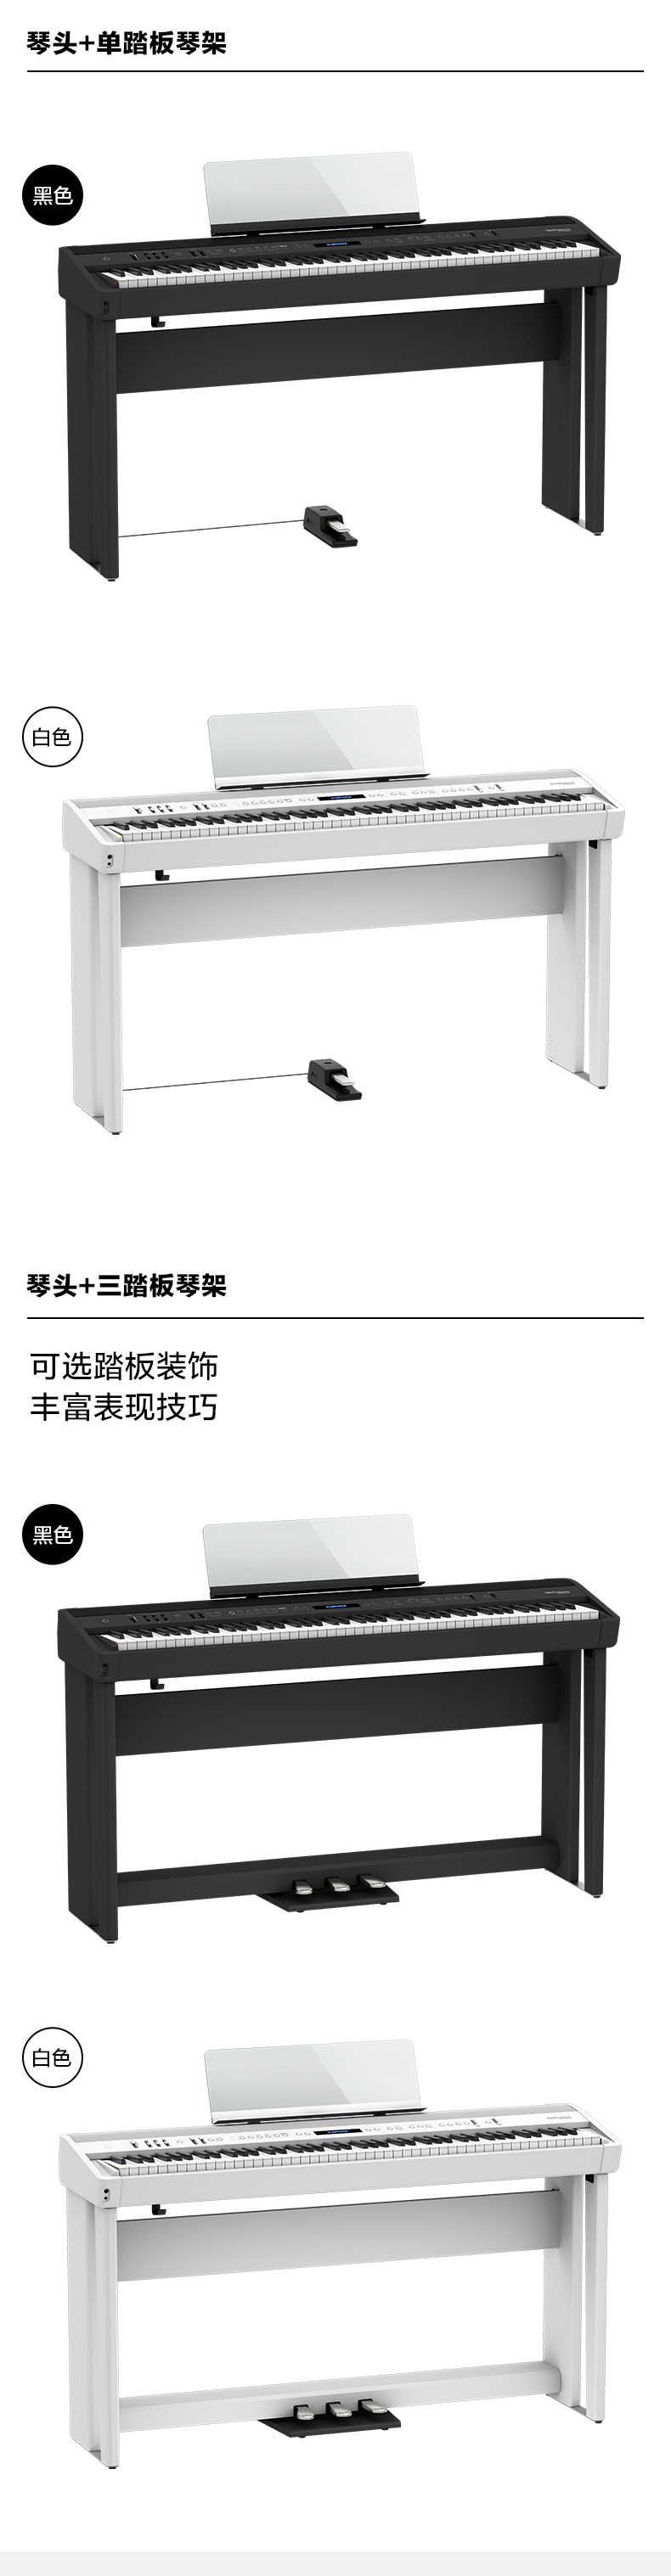 Roland罗兰电钢琴FP60X/FP90X 专业演奏舞台钢琴 88键重锤智能电子钢琴 FP60X-WH白色+原装木架+三踏板+配件礼包